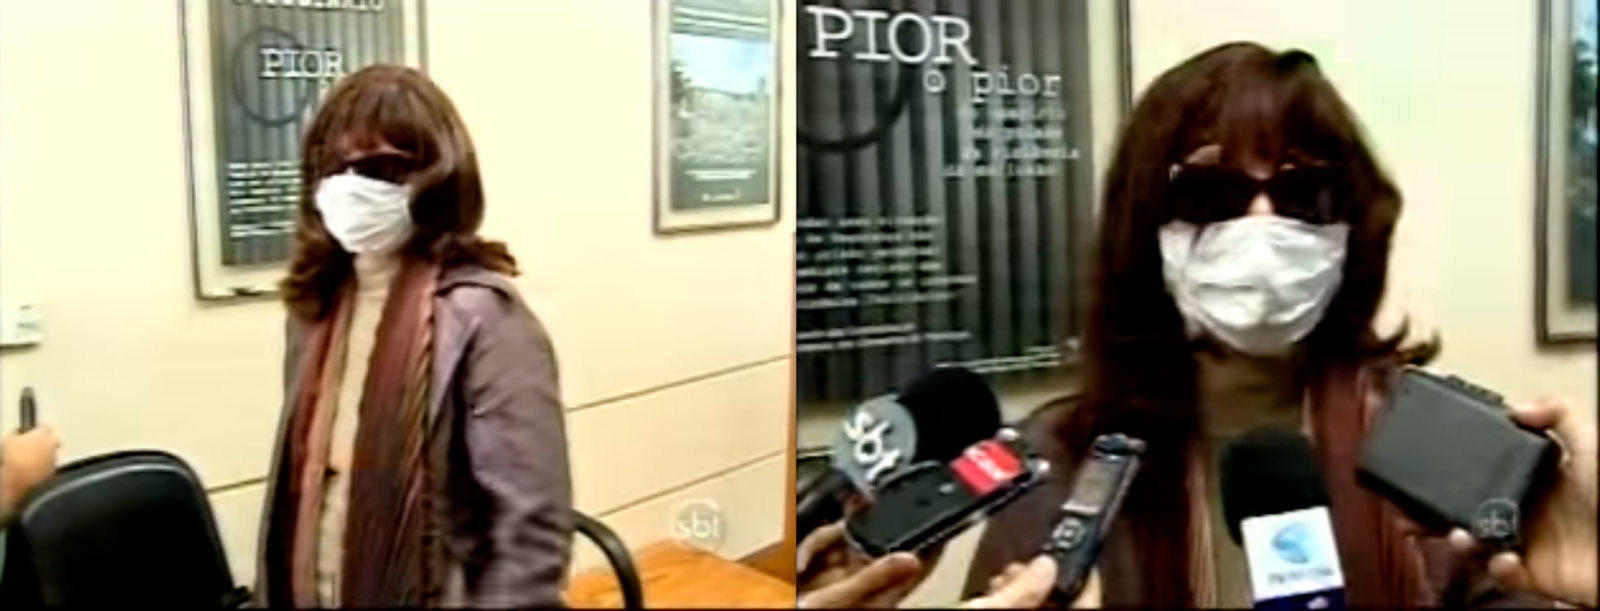 De peruca, óculos escuros e máscara, Rozângela se apresentou ao Conselho de Psicologia do Rio de Janeiro, em 2009, após ser denunciada por realizar tratamento de alteração da sexualidade